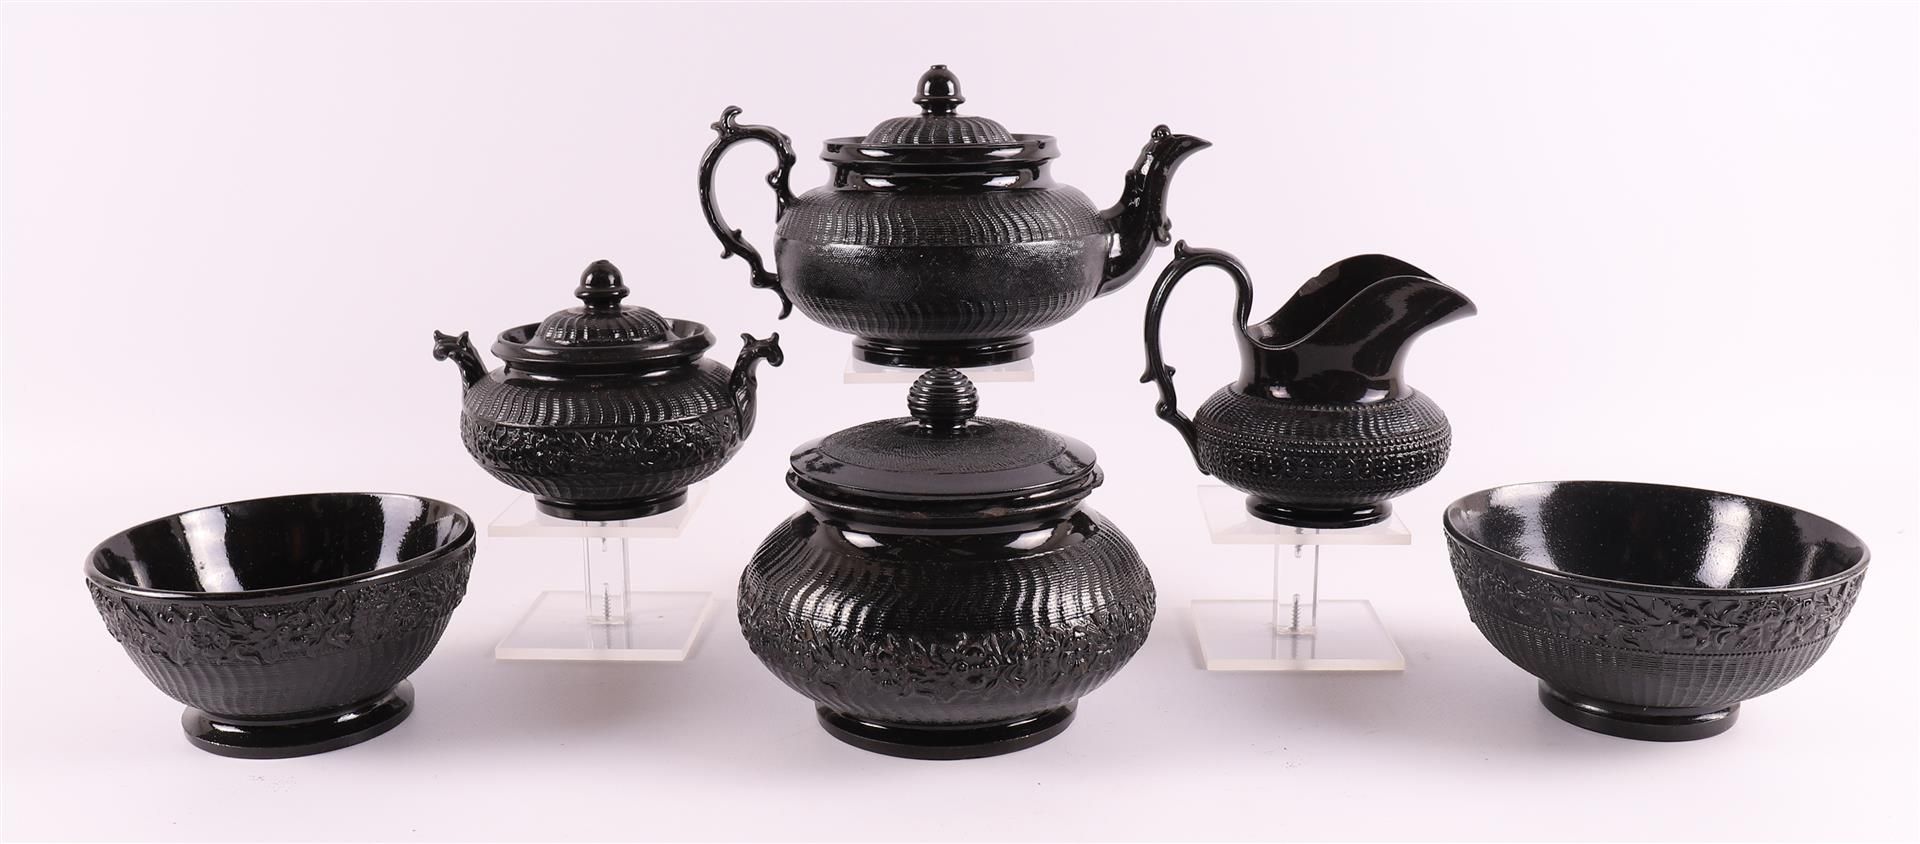 A so-called black basalt porcelain tea set fragment, England, Wedgwood,